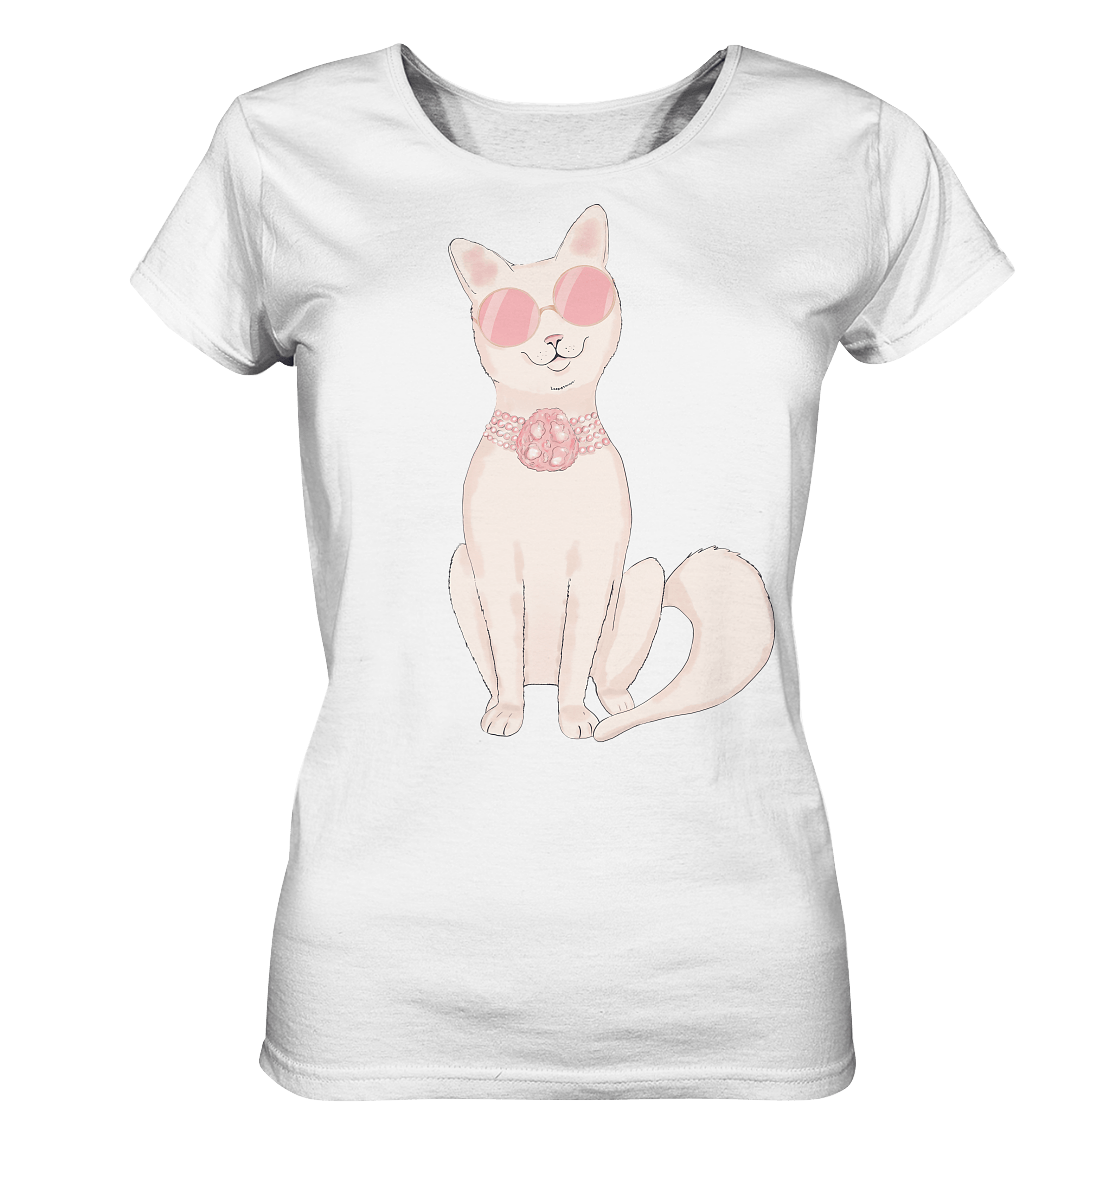 Katze Damen T-Shirt mit Katze in runder Sonnenbrille und Perlen Halskette in rosa Tönen von Bloominic in weißer Farbe